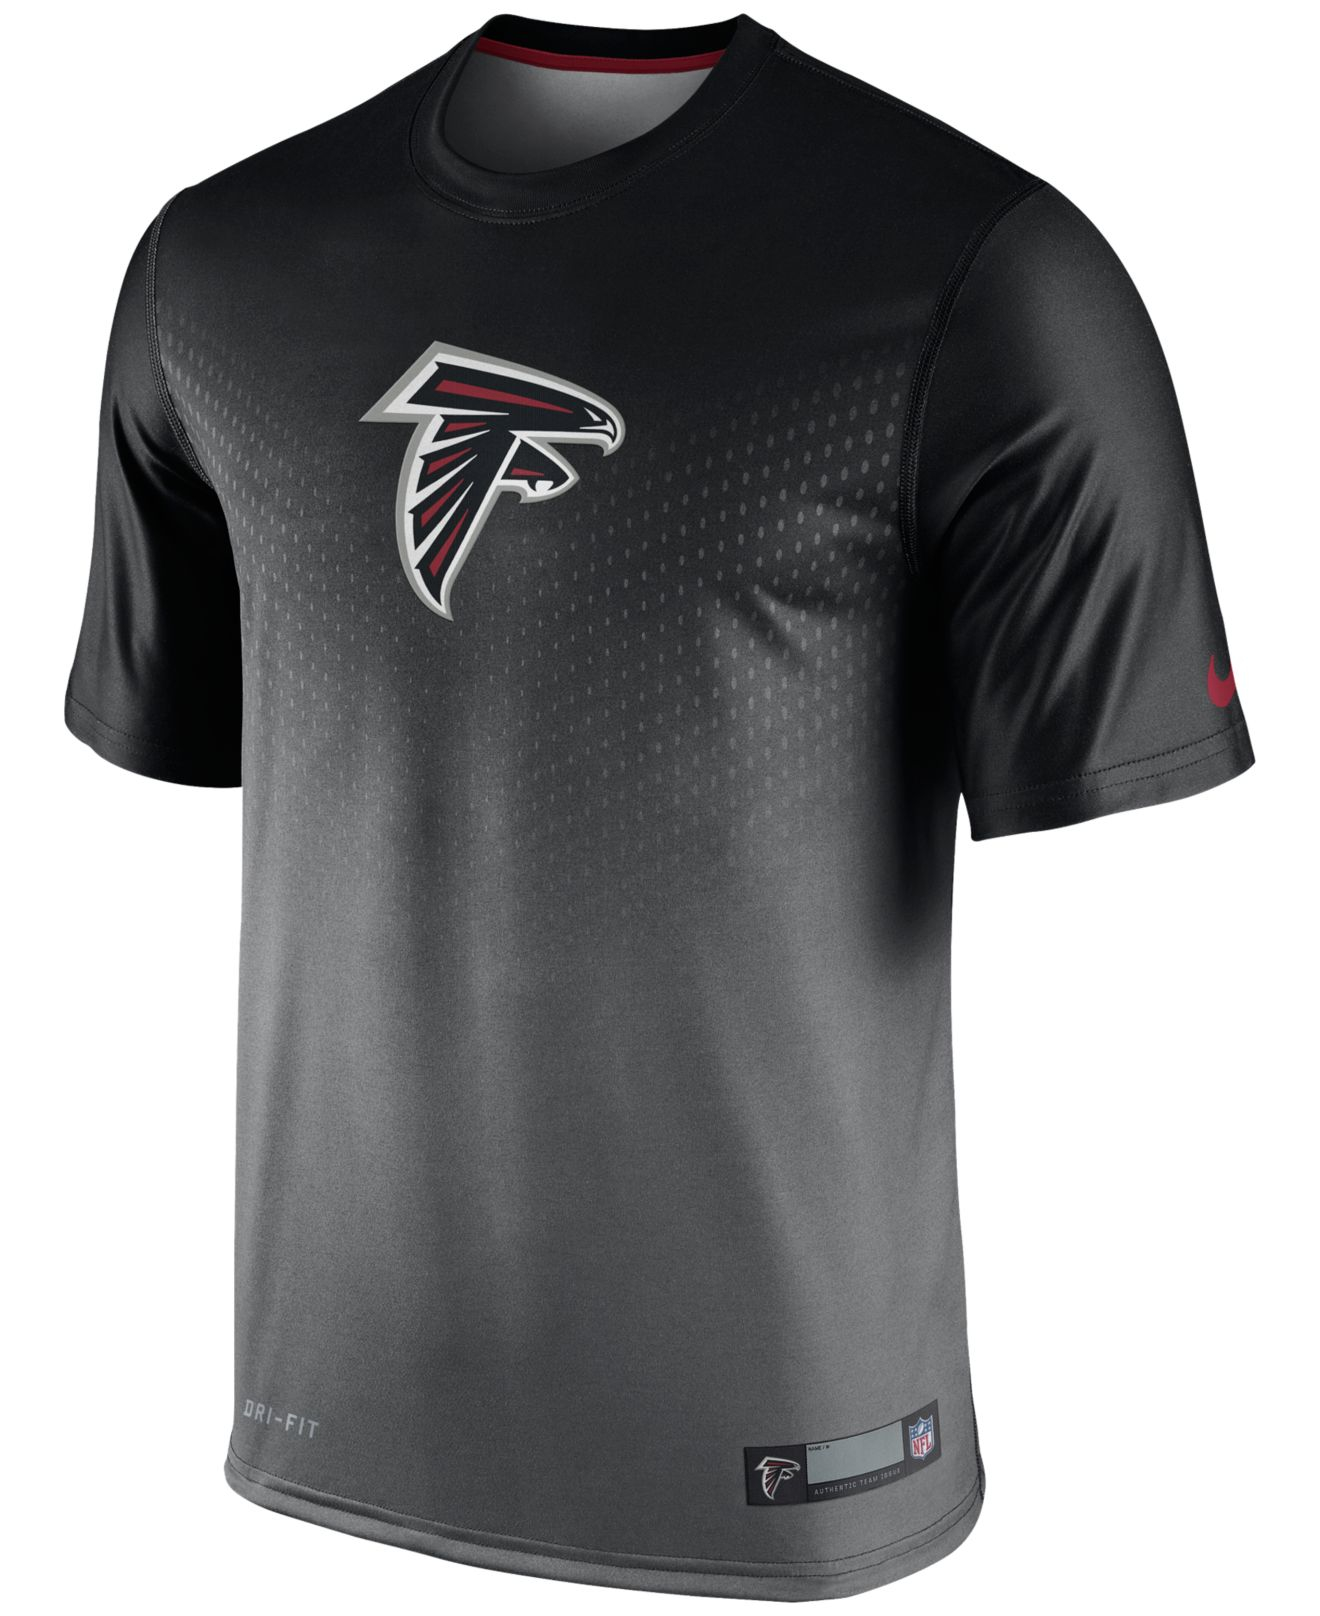 Lyst - Nike Men's Atlanta Falcons Legend Sideline Dri-fit T-shirt in ...